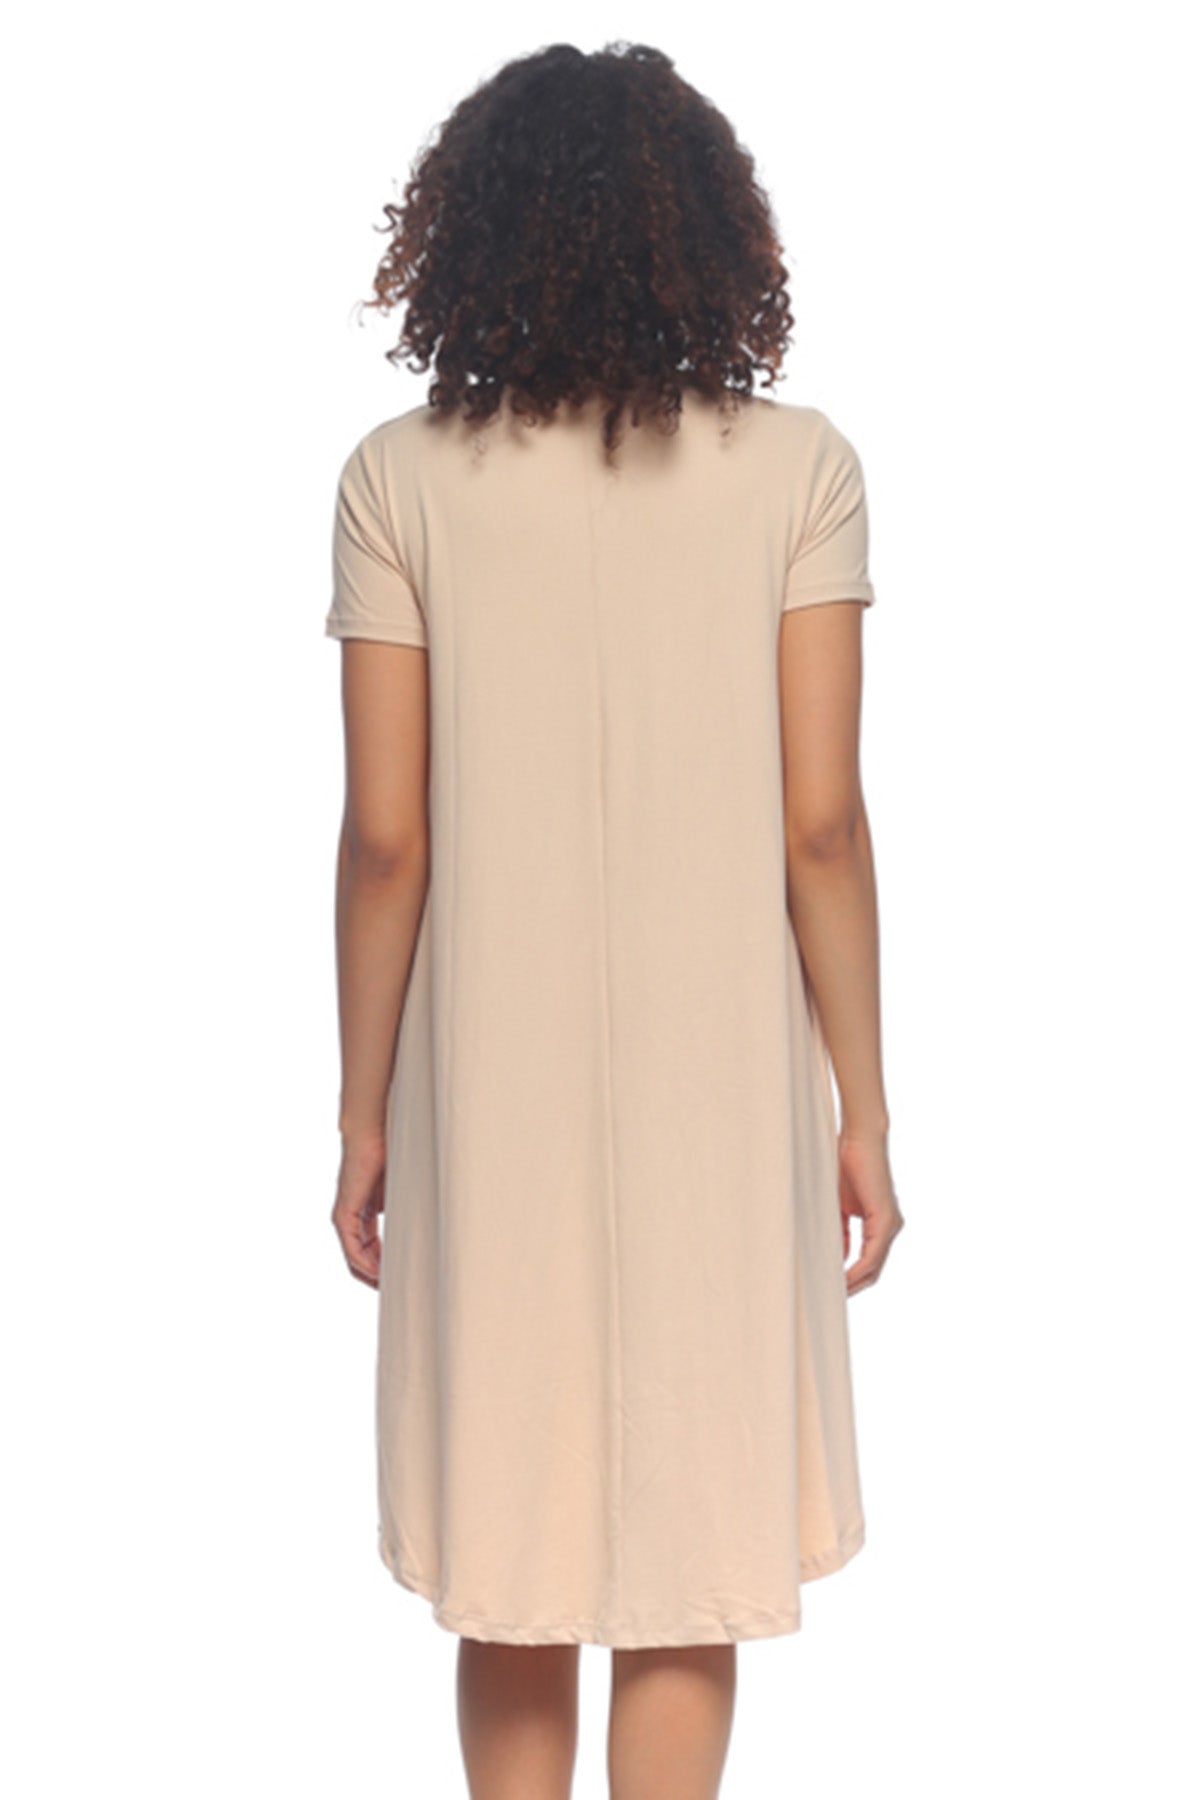 [$2/piece] Short Sleeve Trapeze High-Low Dress